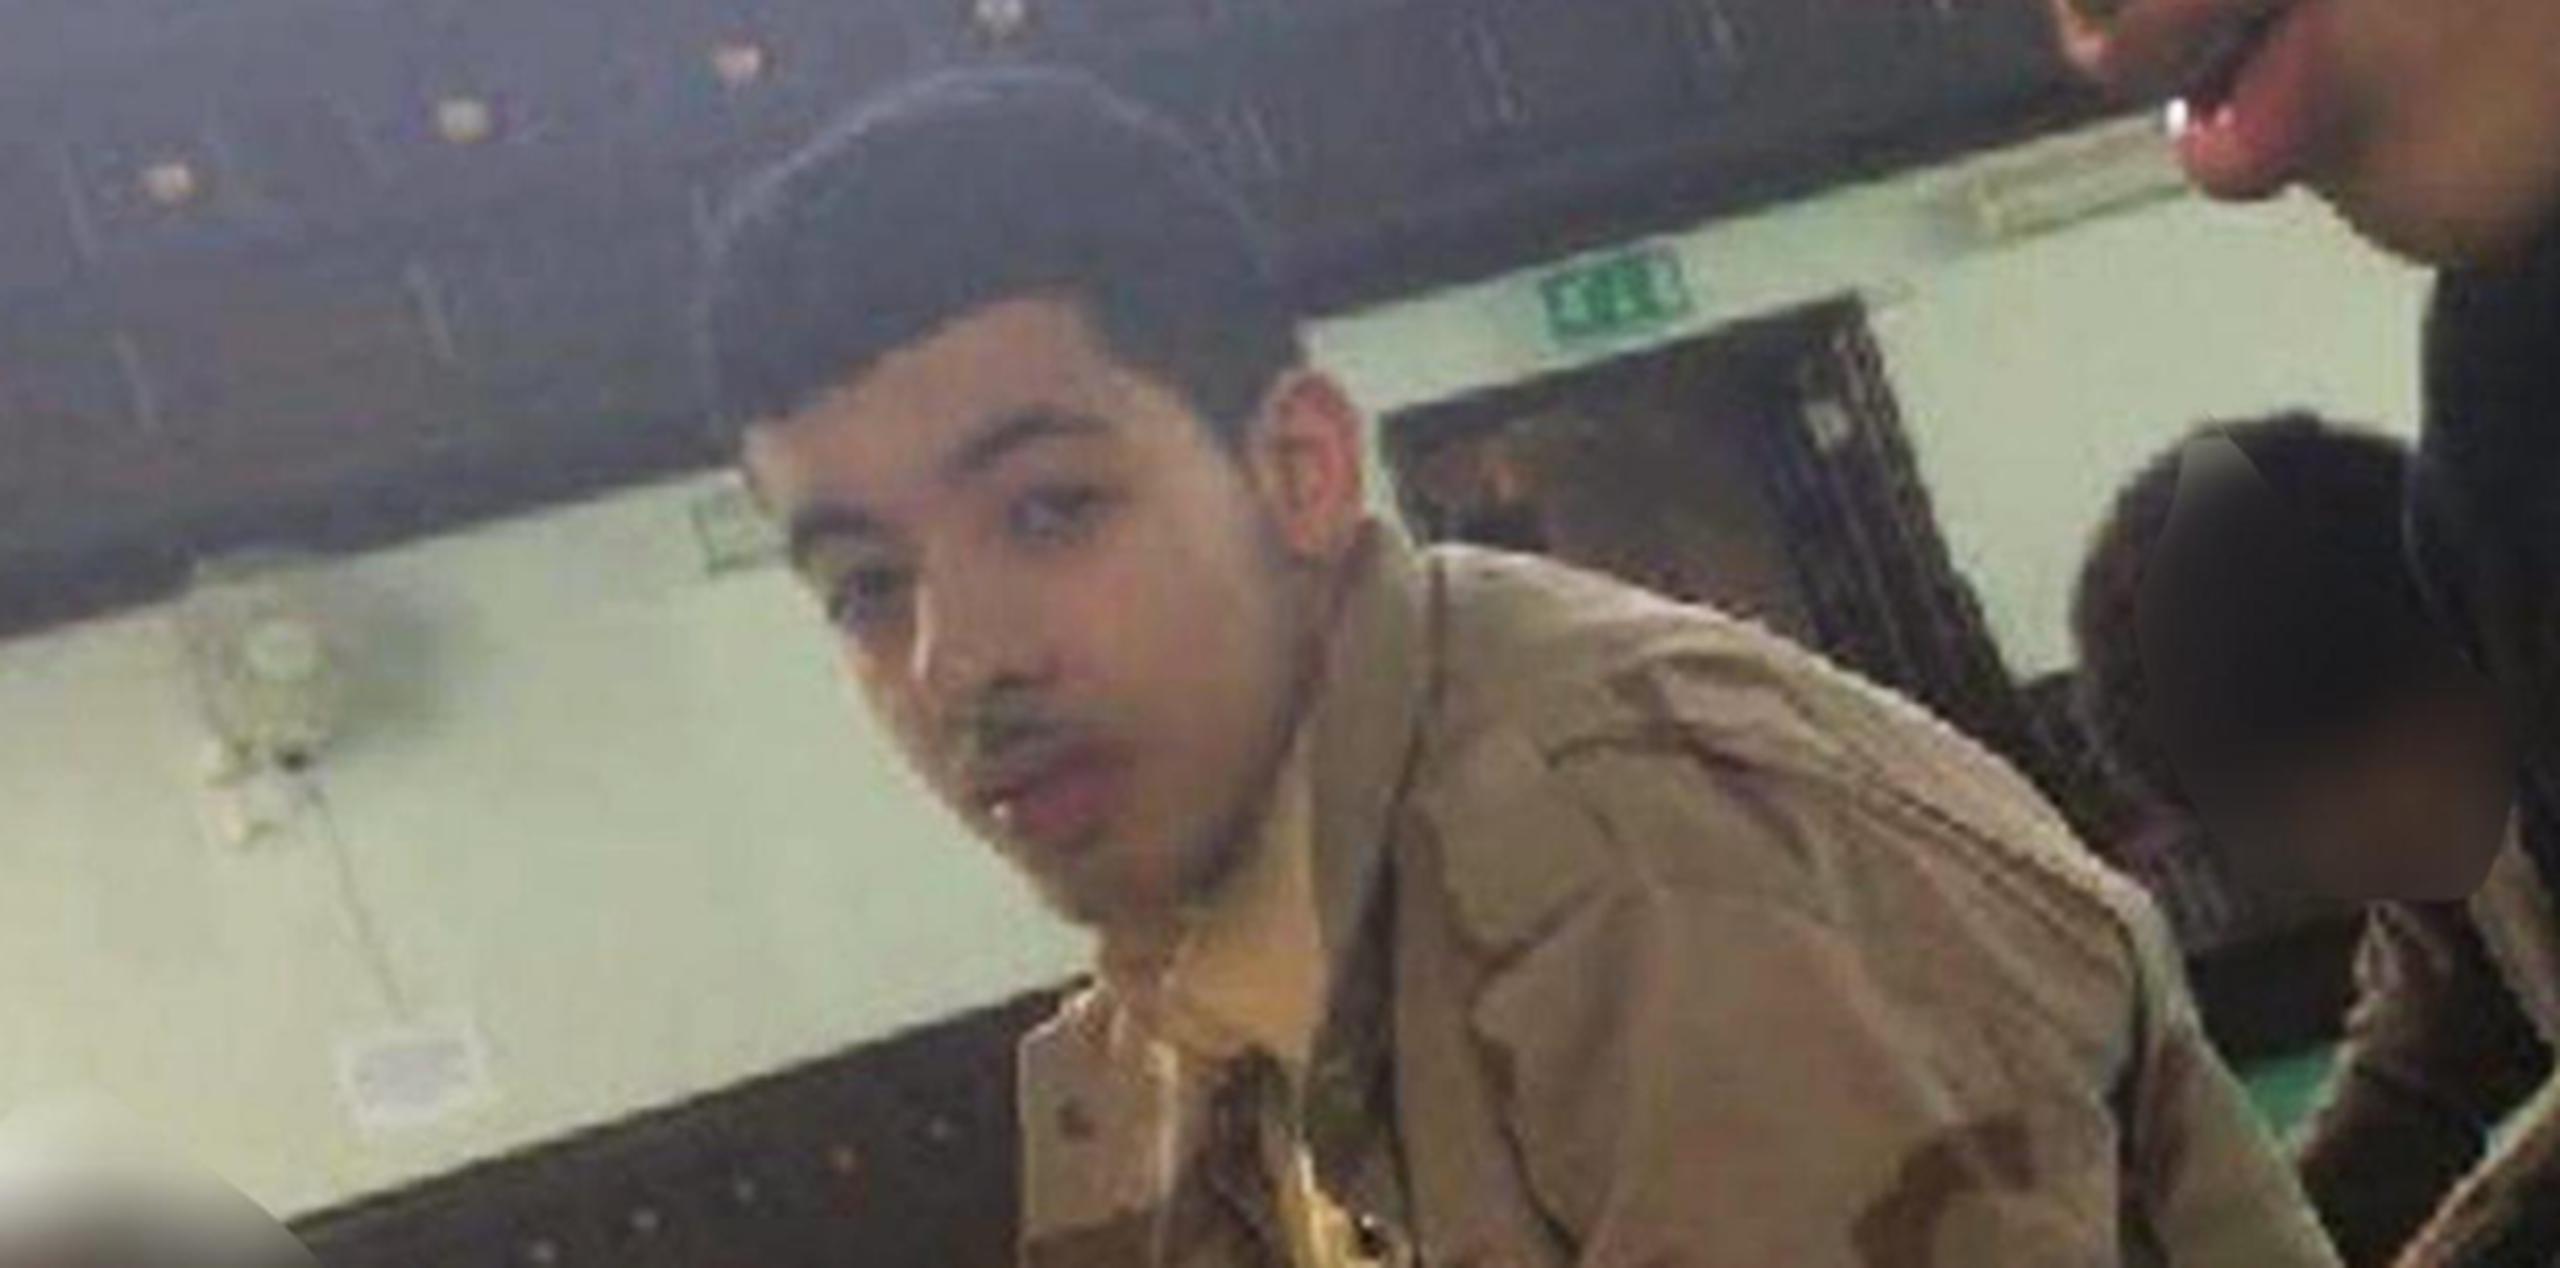 Salman Abed, sospechoso de perpetrar el ataque en el Manchester Arena. (Vía The Independent)